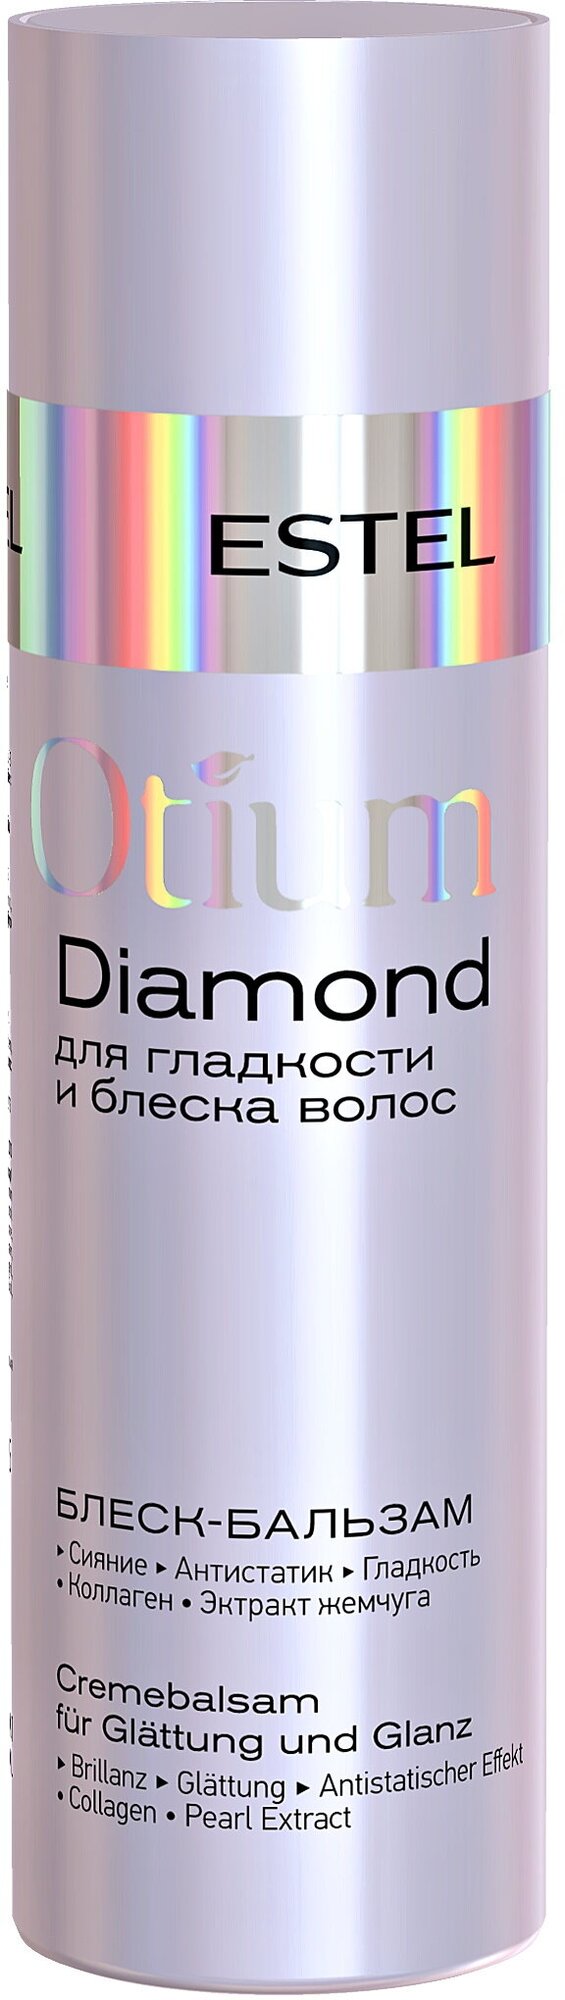 Бальзам OTIUM DIAMOND для гладкости и блеска волос ESTEL PROFESSIONAL 200 мл